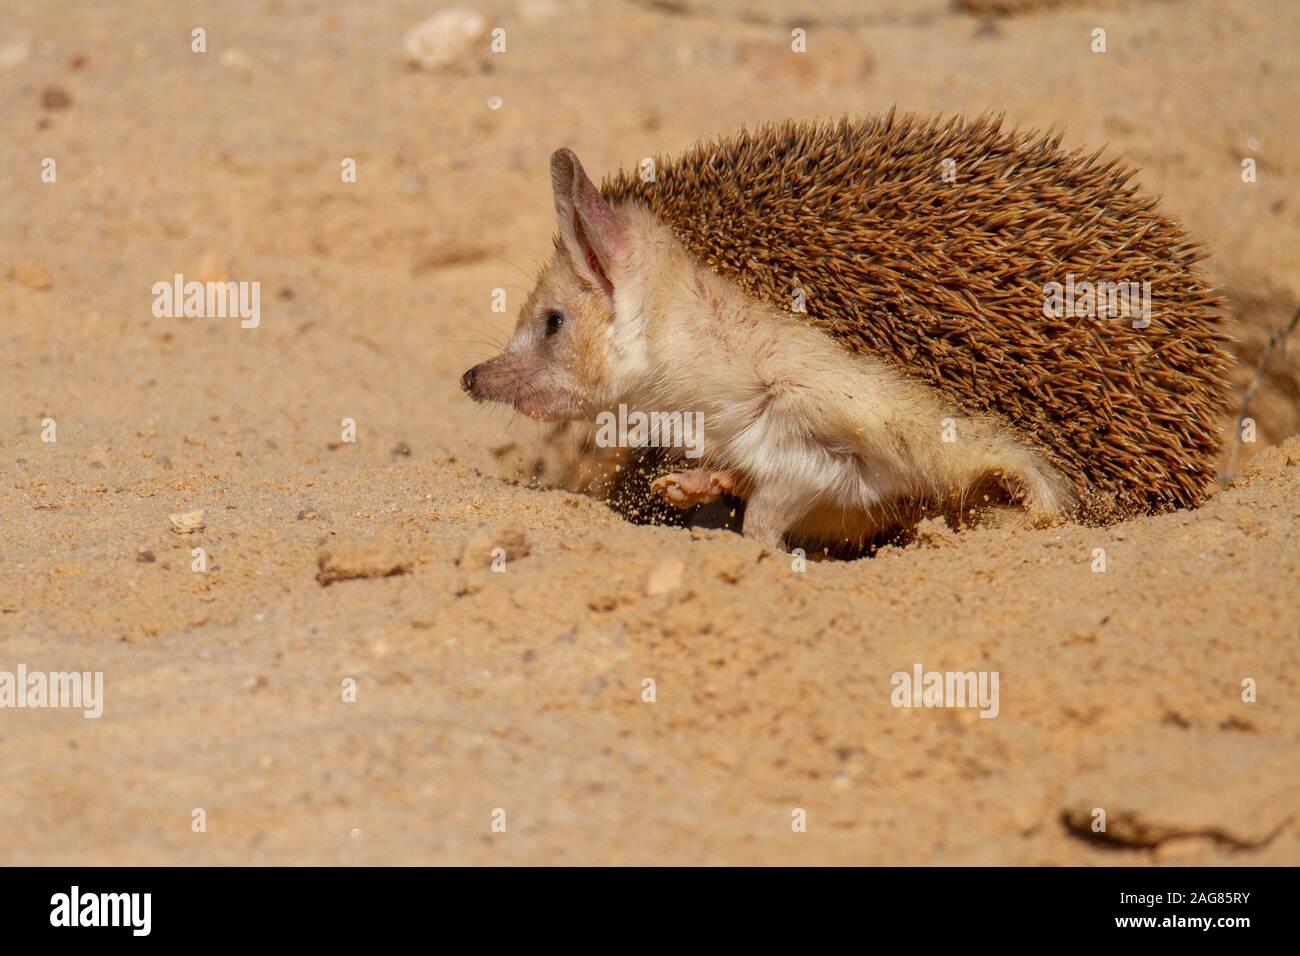 Le hibou moyen-hedgehog (Hemiechinus auritus) est une espèce de hérisson originaire d'Asie centrale et certains pays du Moyen-Orient. La lo Banque D'Images